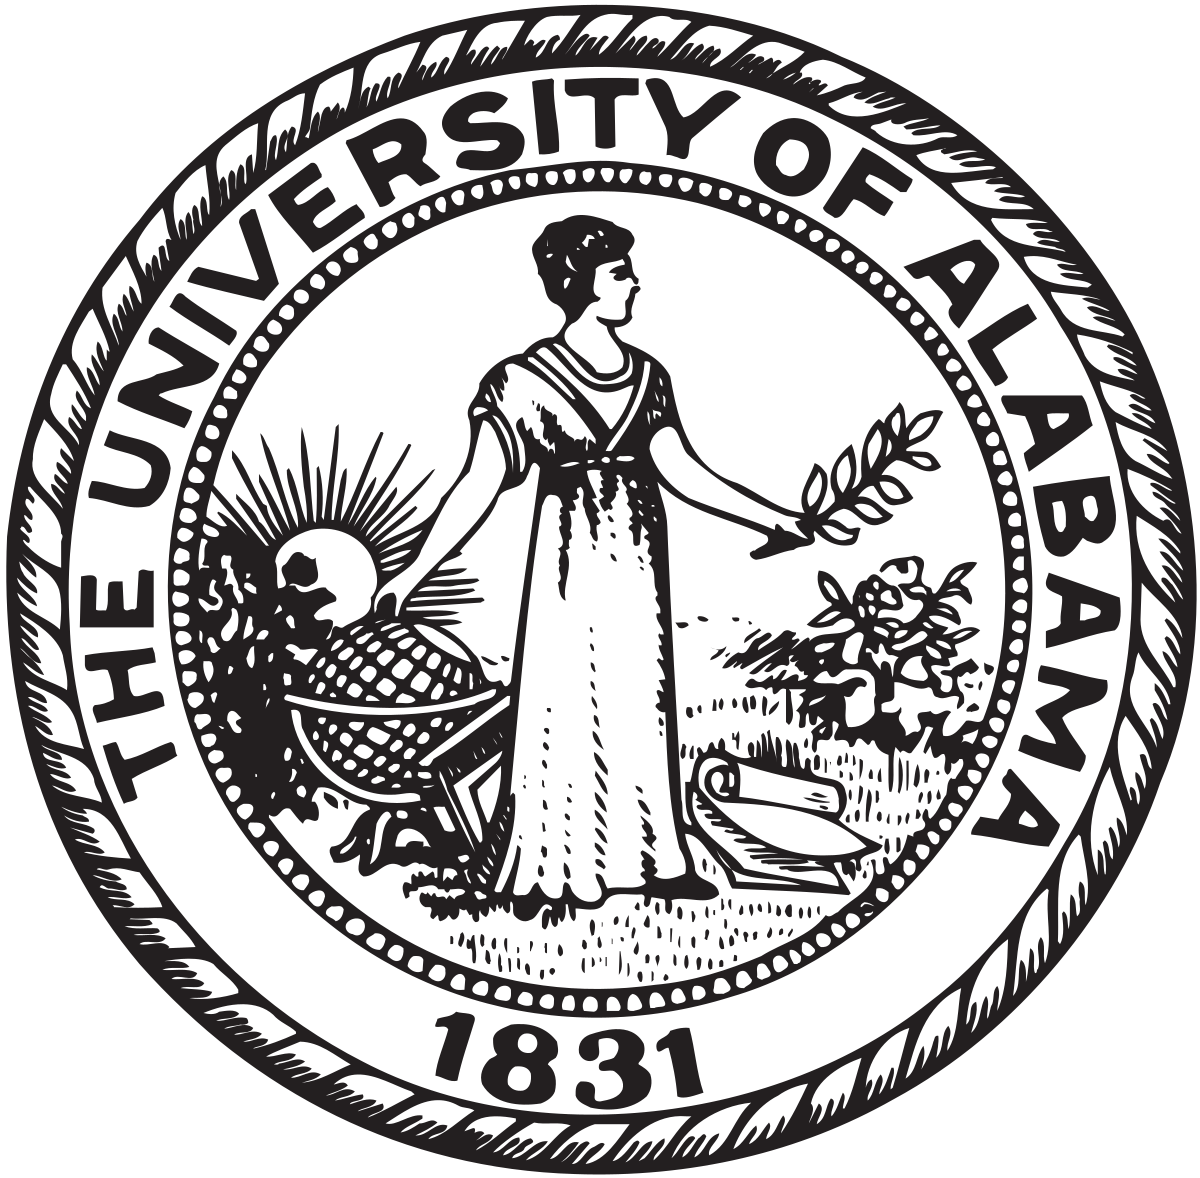 University of Alabama Football Logo - University of Alabama